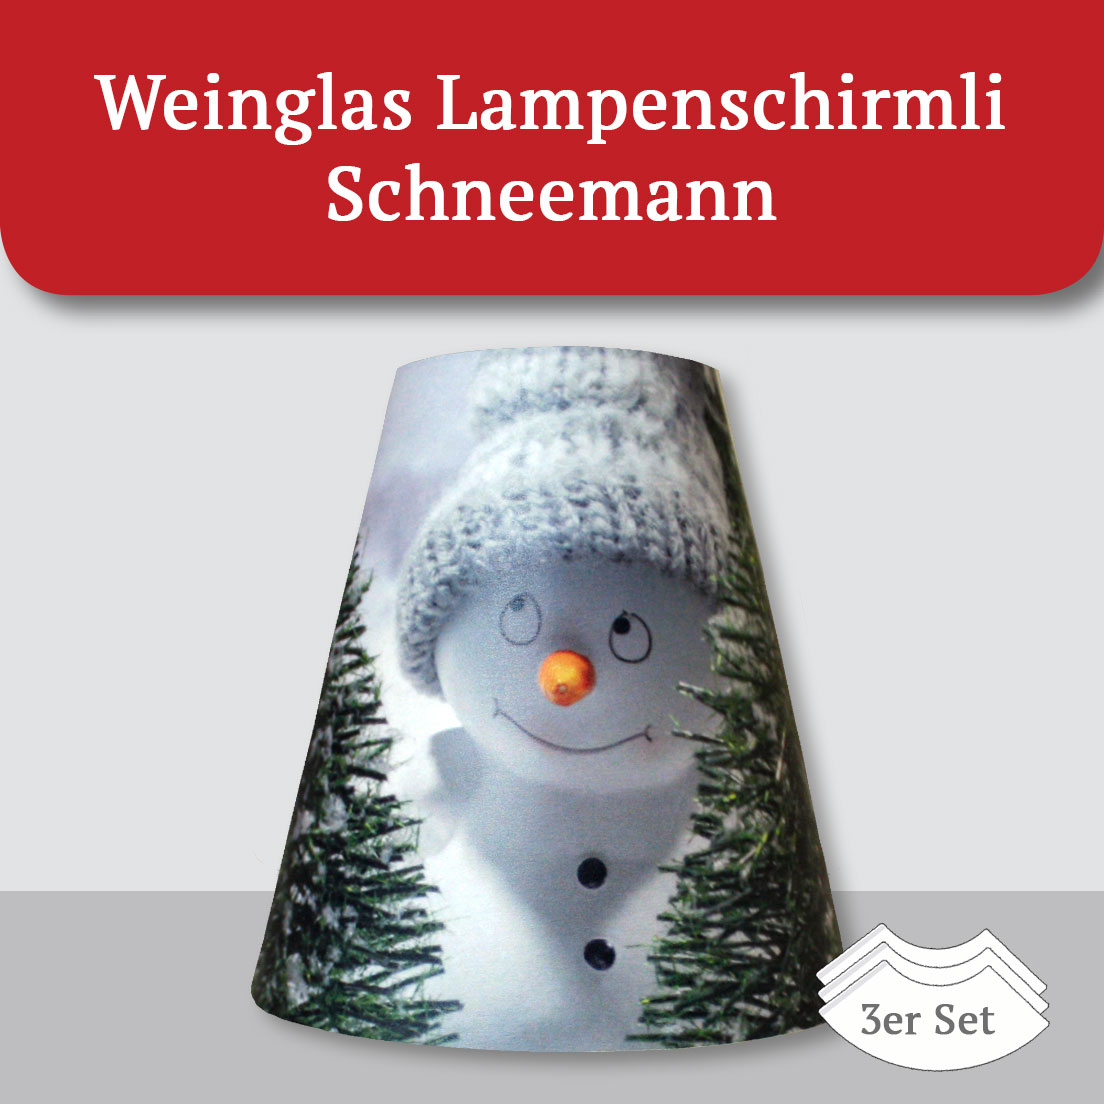 Weinglas Lampenschirmli Schneemann